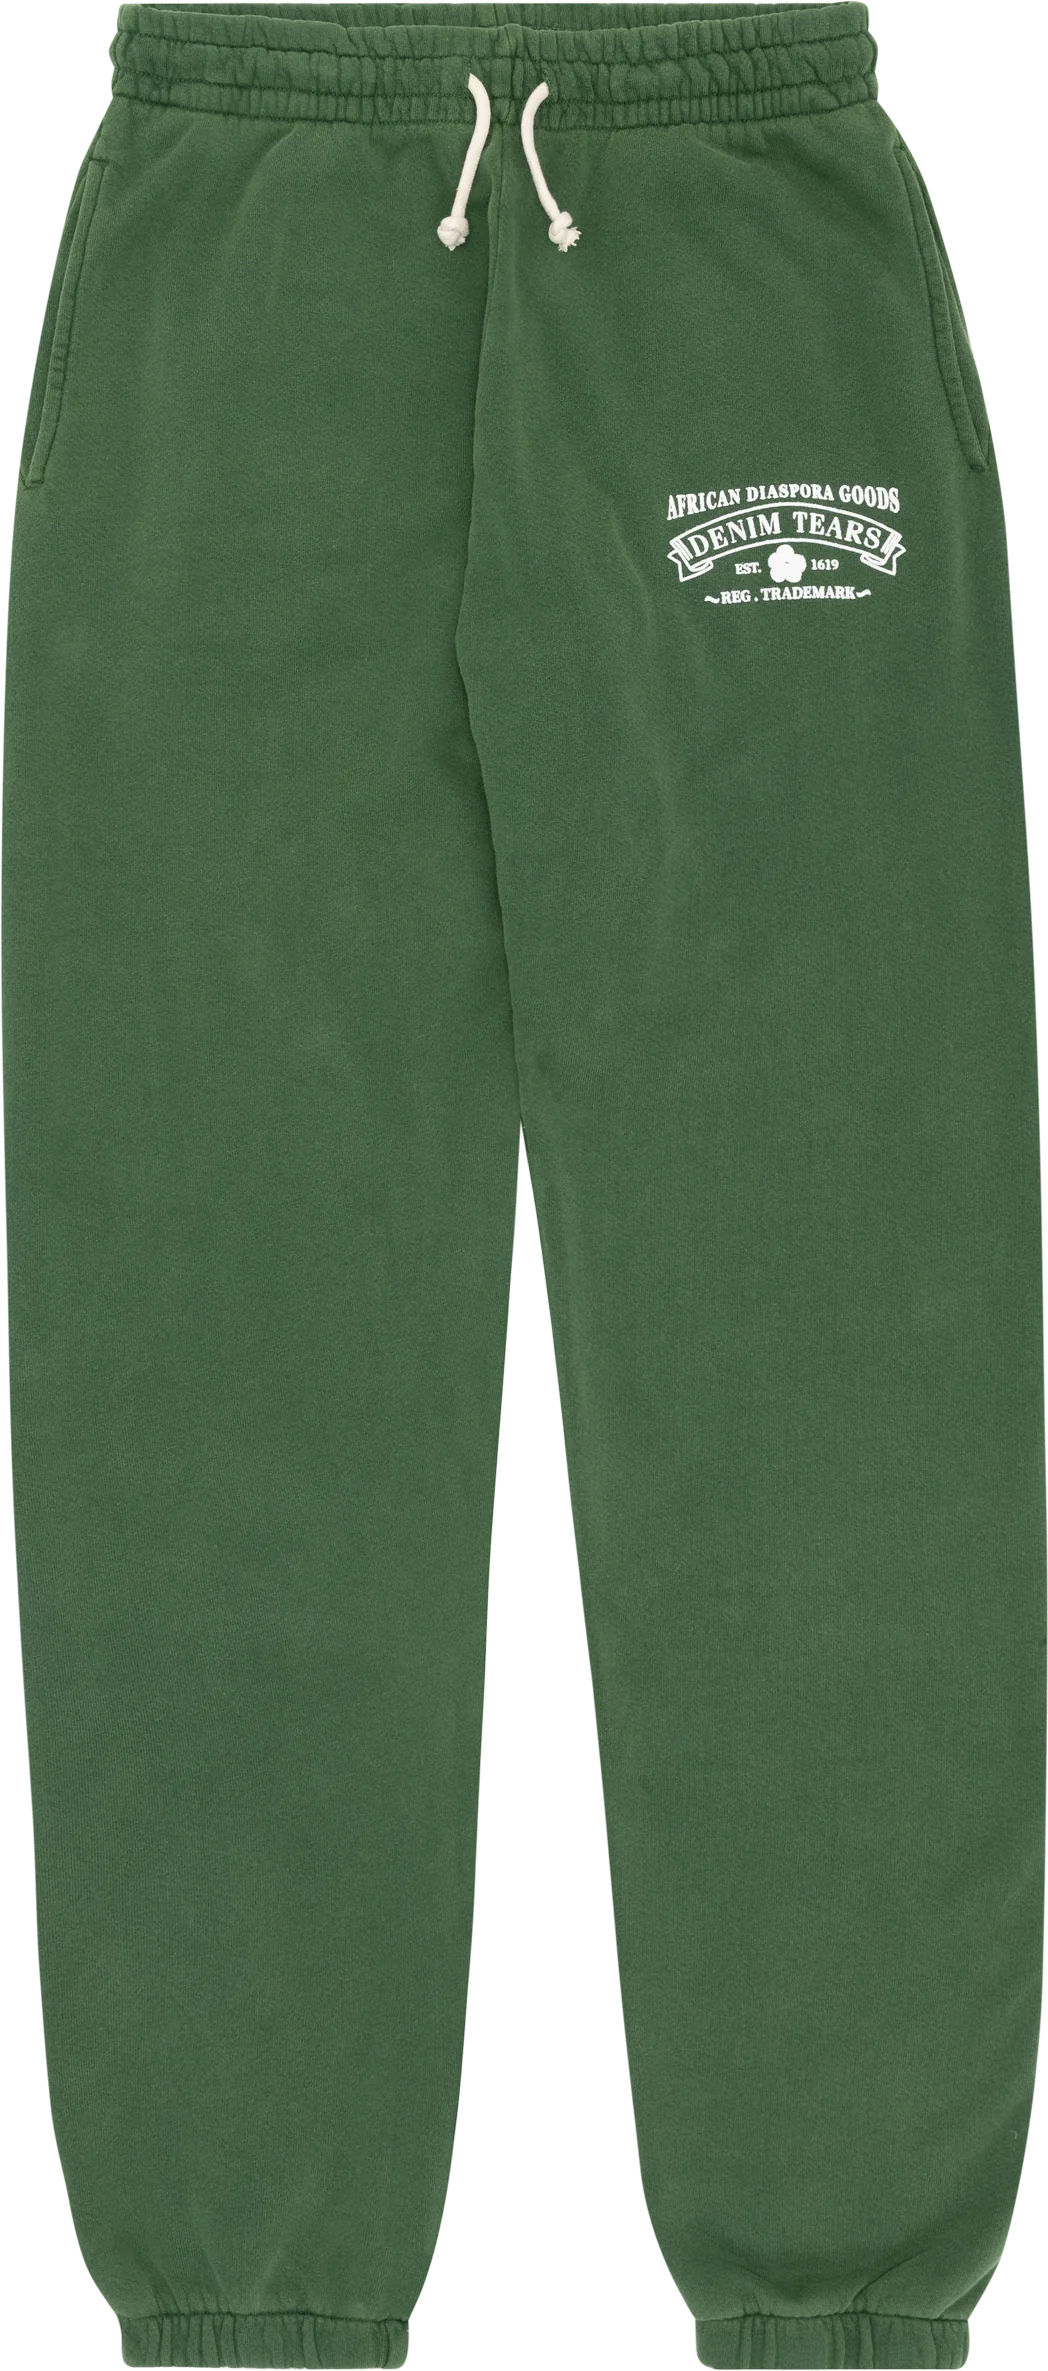 Denim Tears ADG Sweatpants 'Vintage Green'